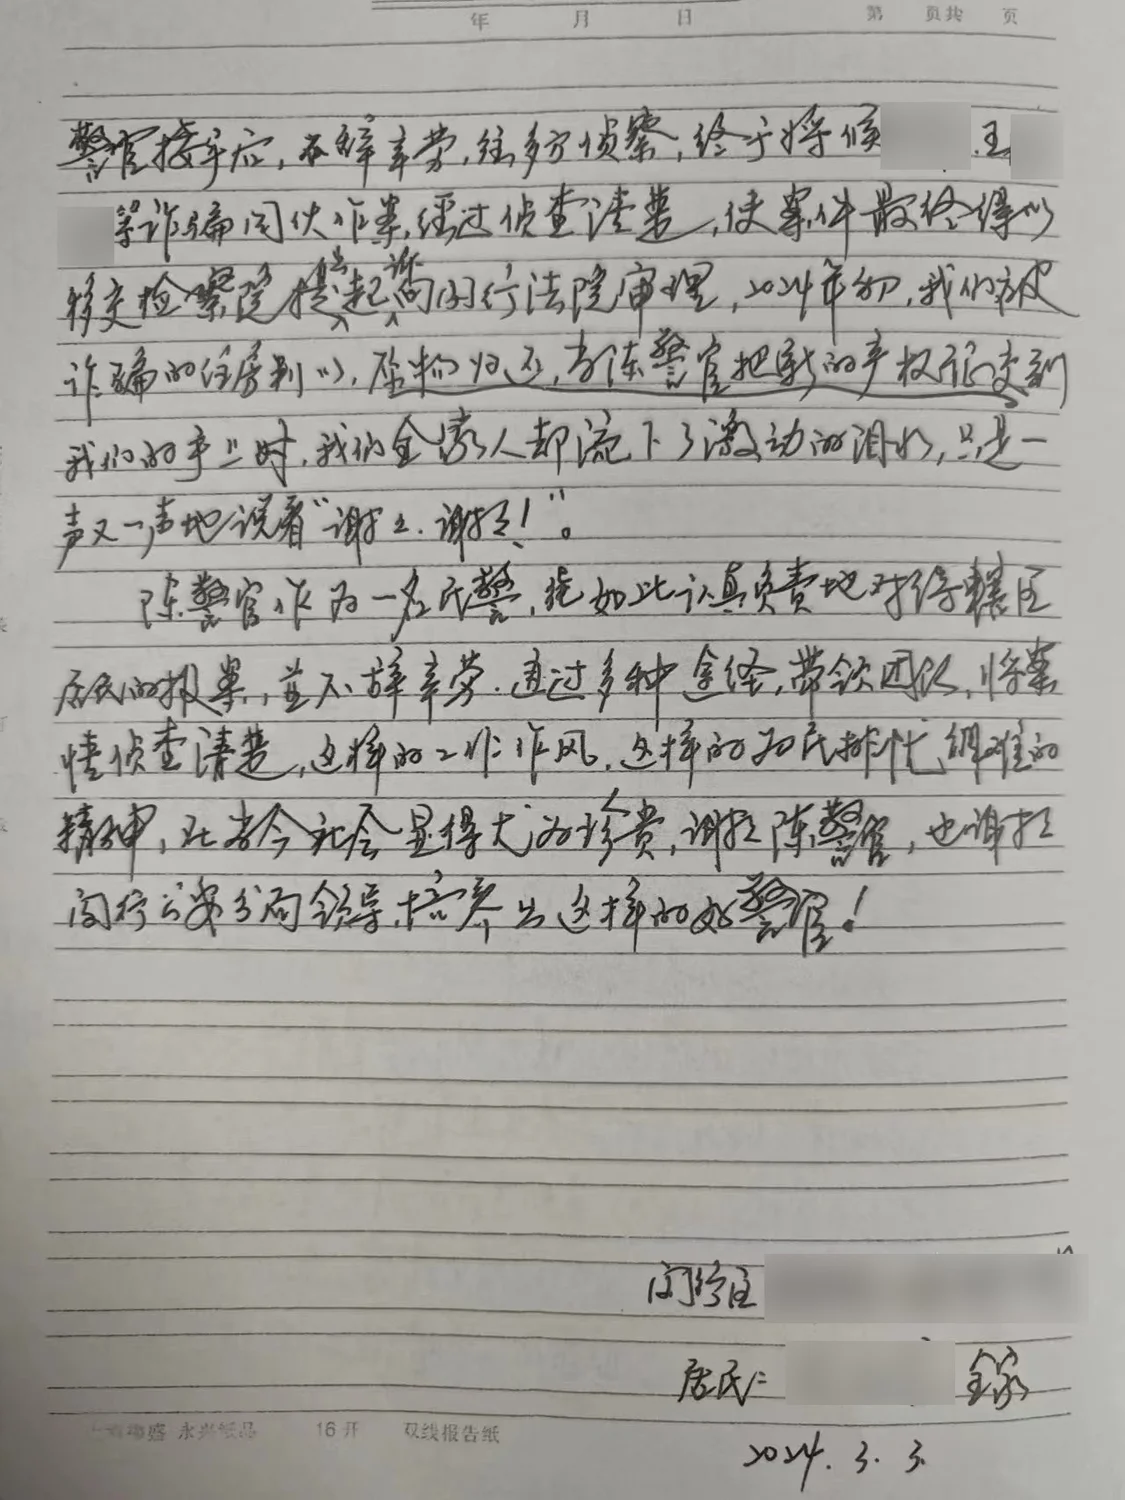 尤老先生手写的感谢信。 本文图片 上海闵行警方 提供